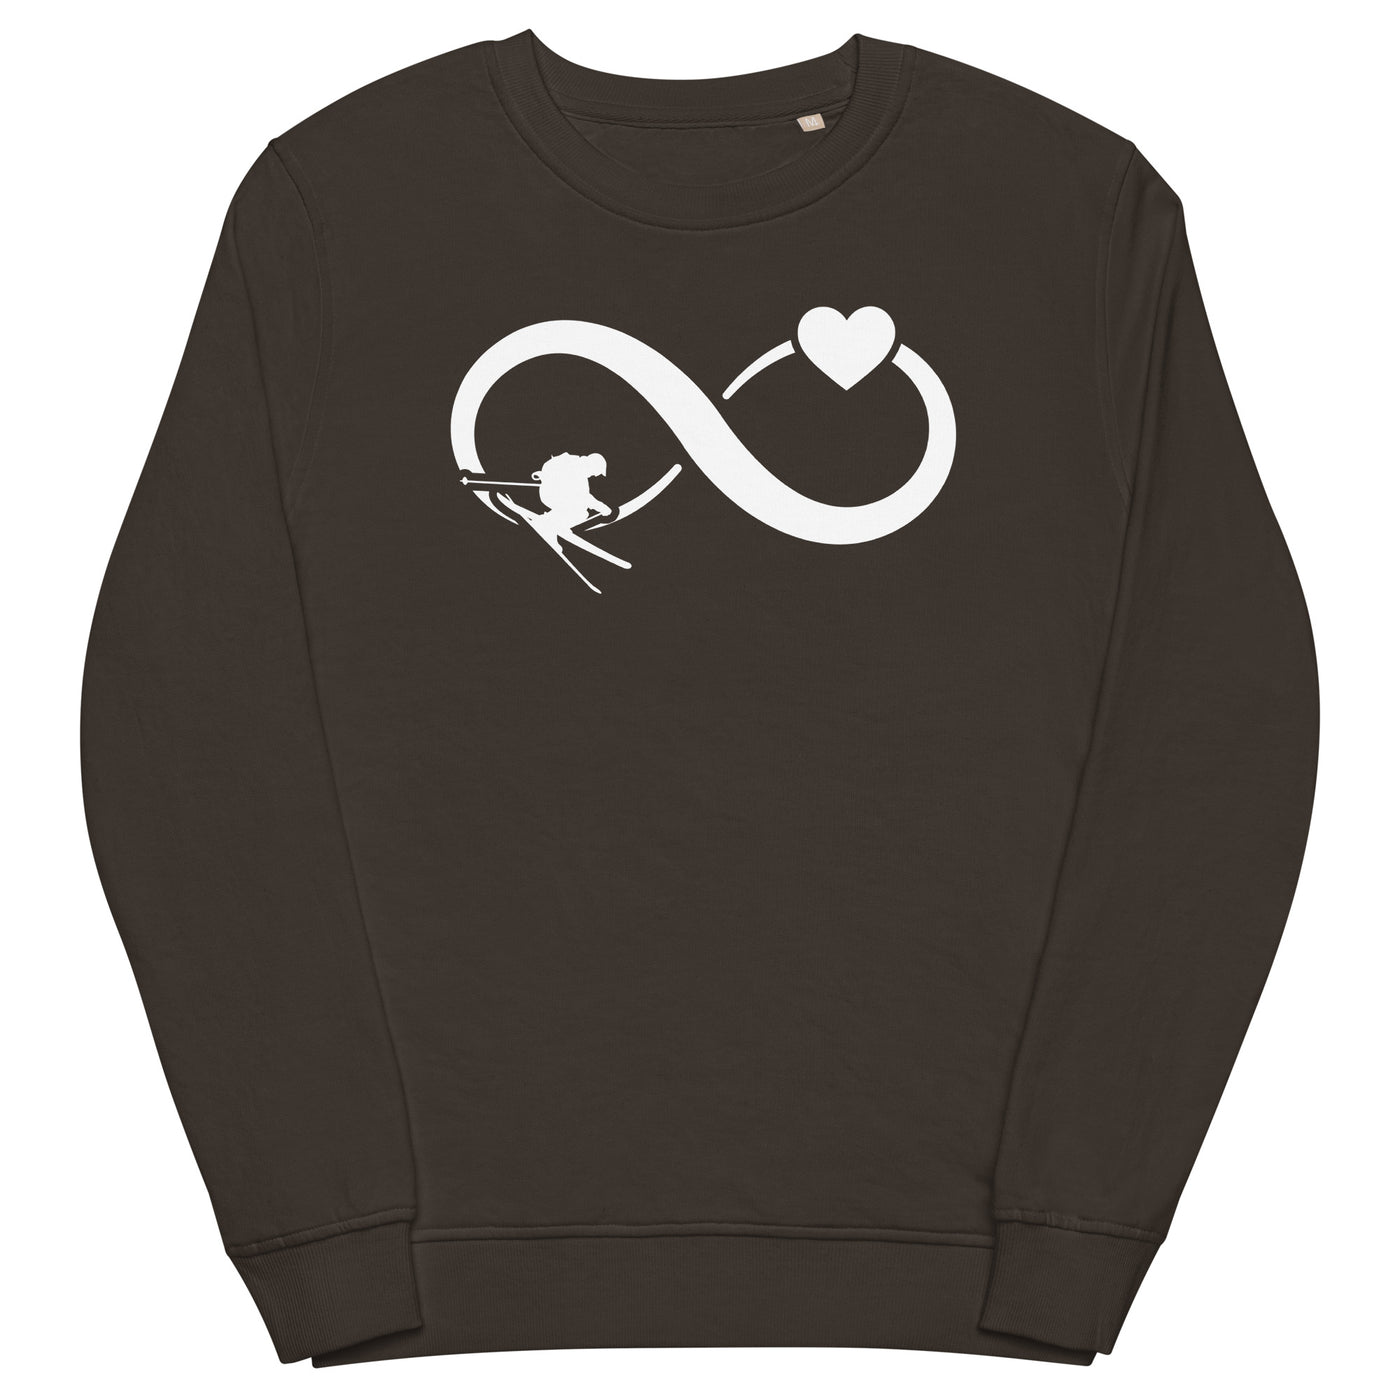 Infinity Heart and Skiing - Unisex Premium Organic Sweatshirt klettern ski xxx yyy zzz Deep Charcoal Grey